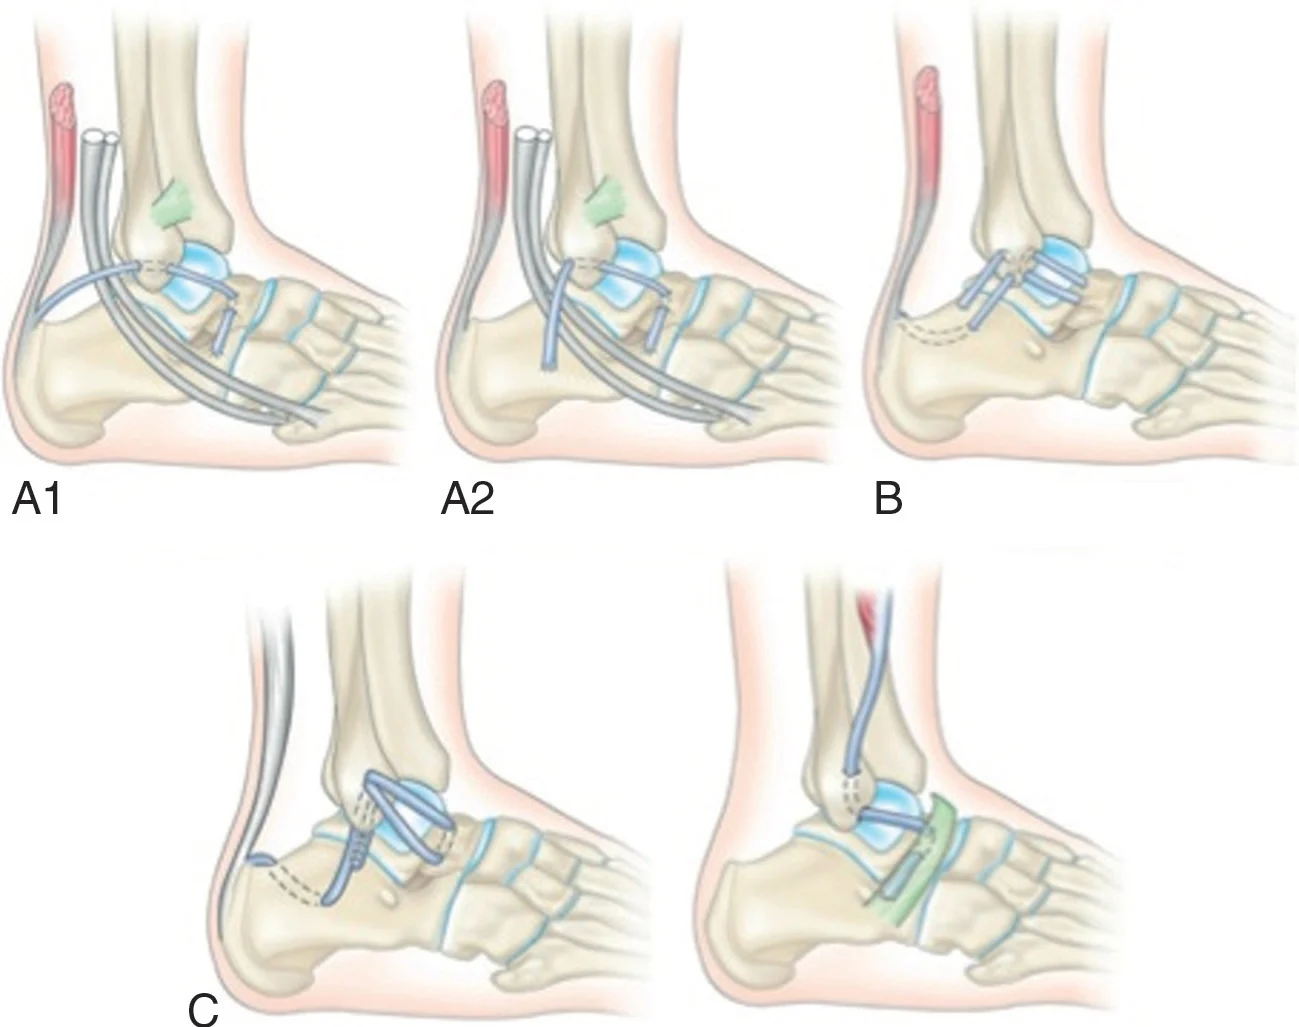 Figure 20.10 (Cliquez pour agrandir) Reconstructions anatomiques utilisant différents tendons